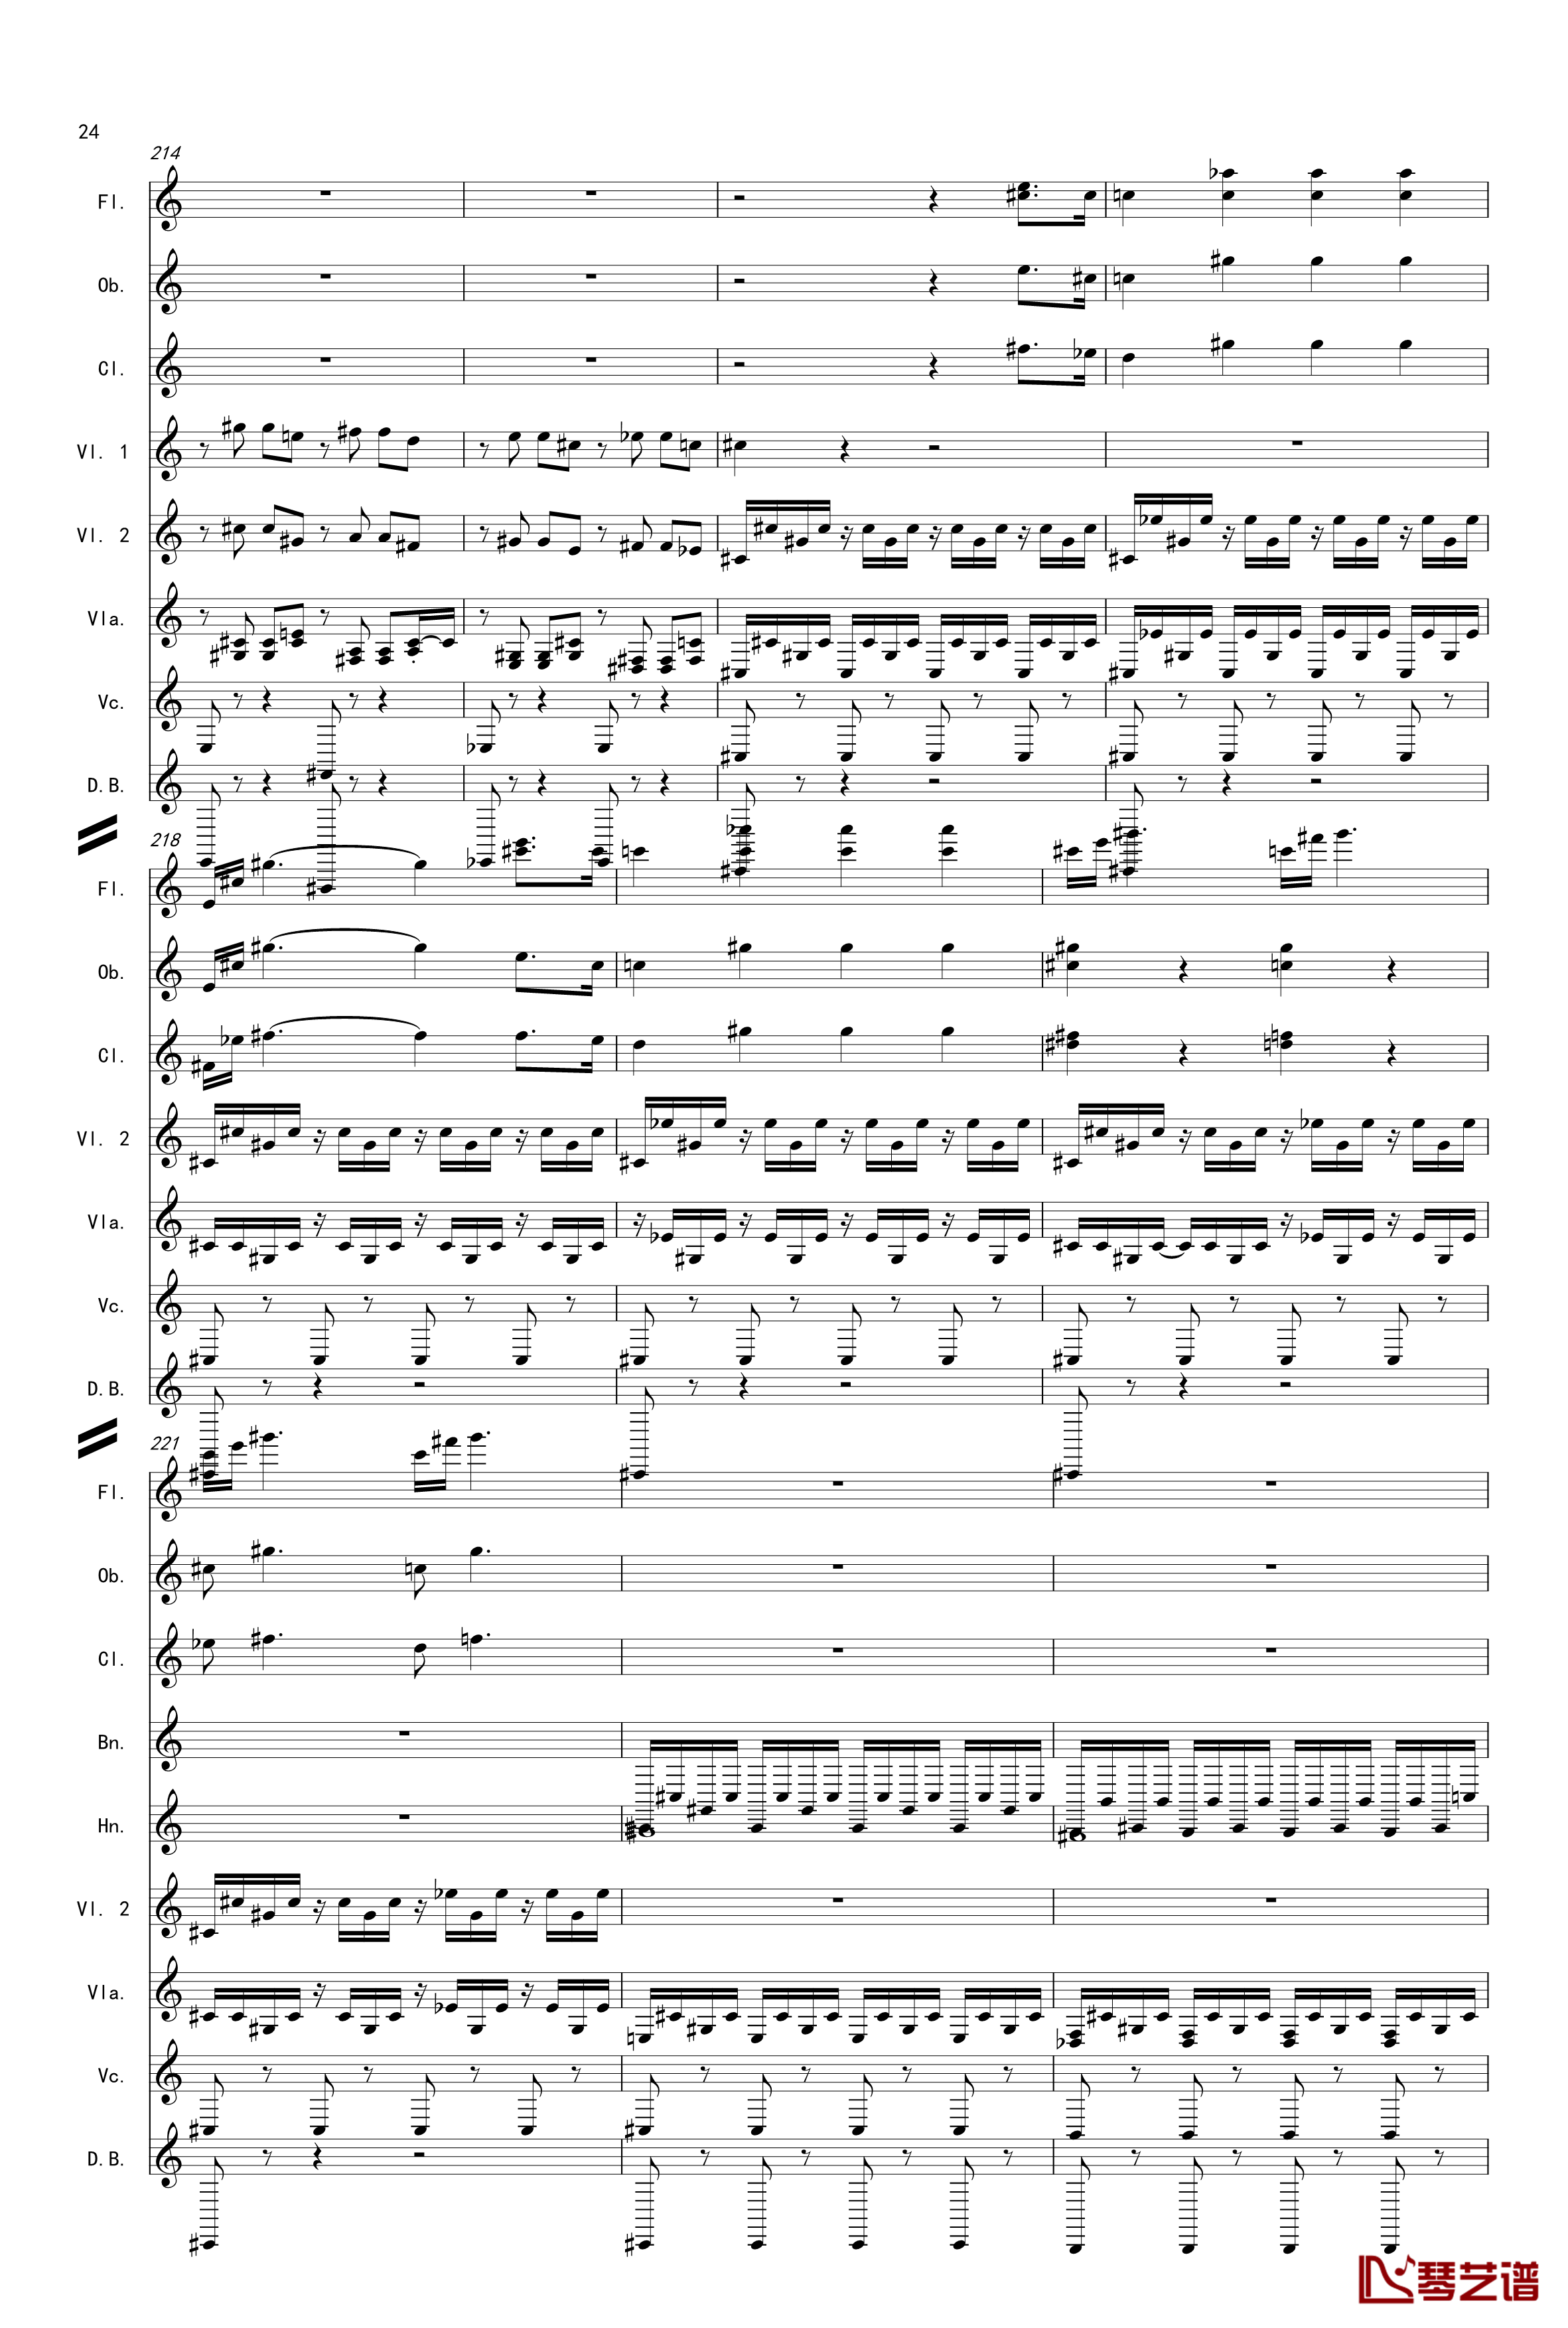 奏鸣曲之交响第14首Ⅲ钢琴谱-贝多芬-beethoven24